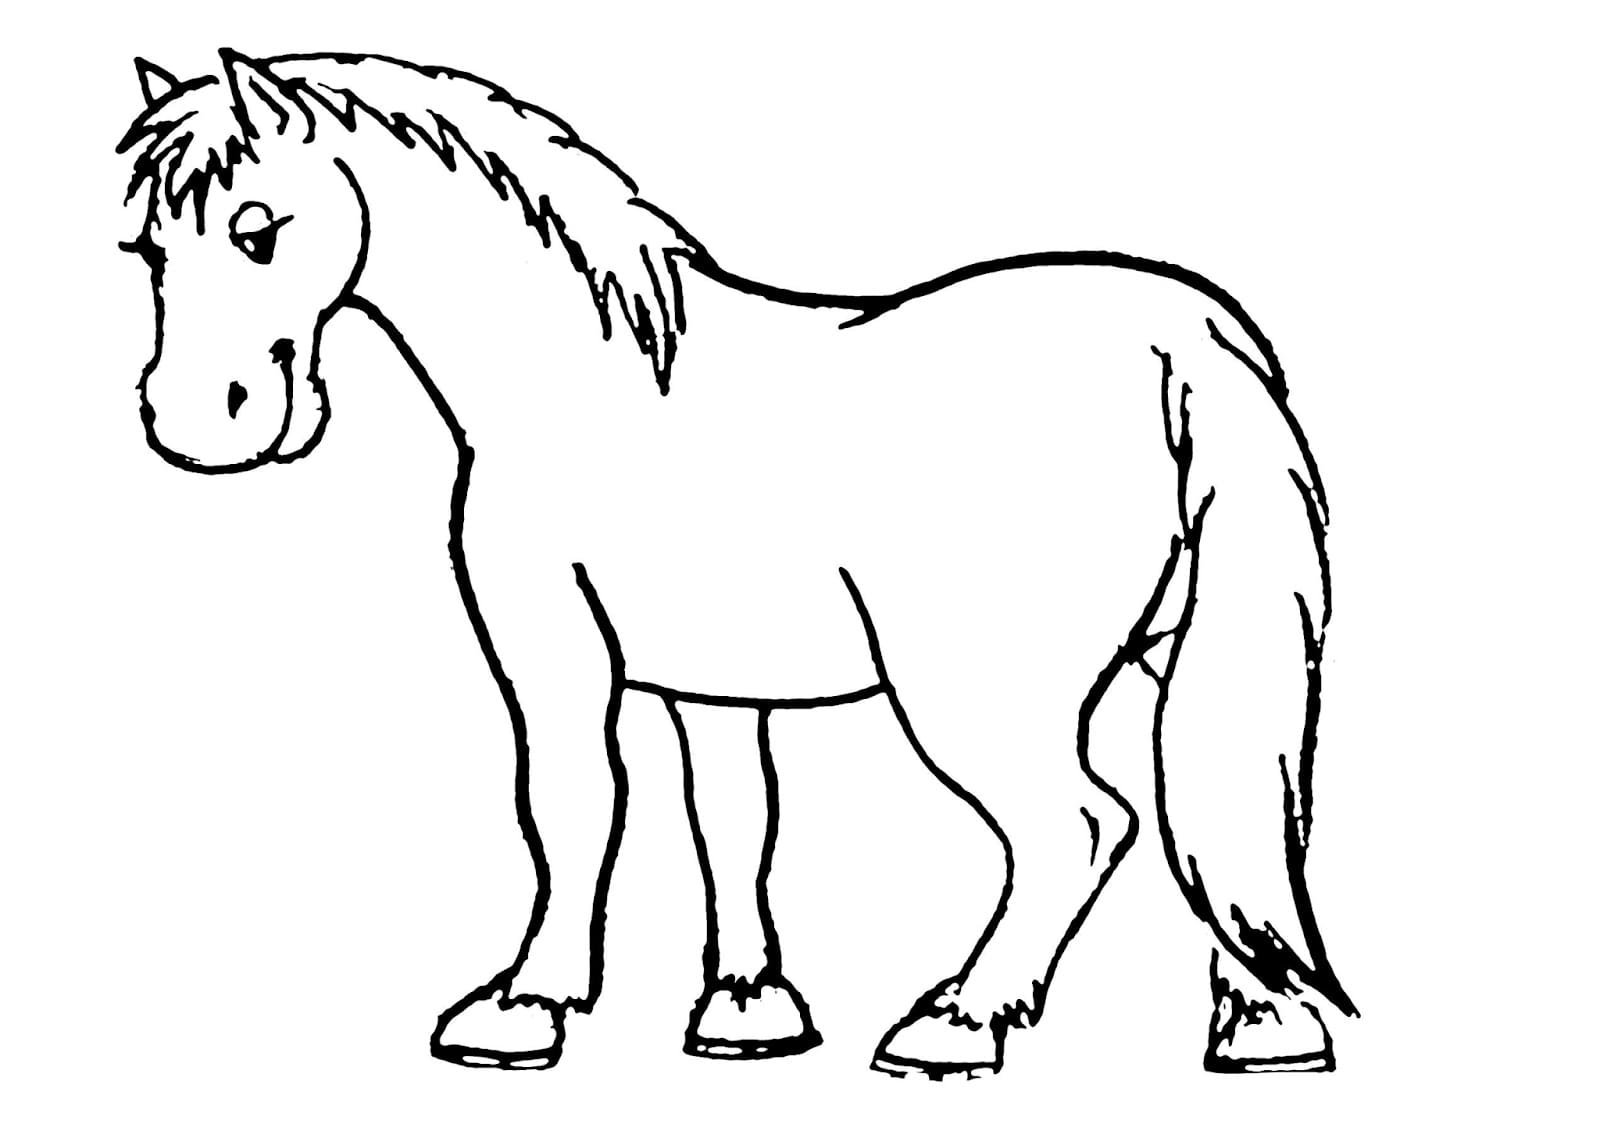 Раскраска лошадка для детей 3-4 лет